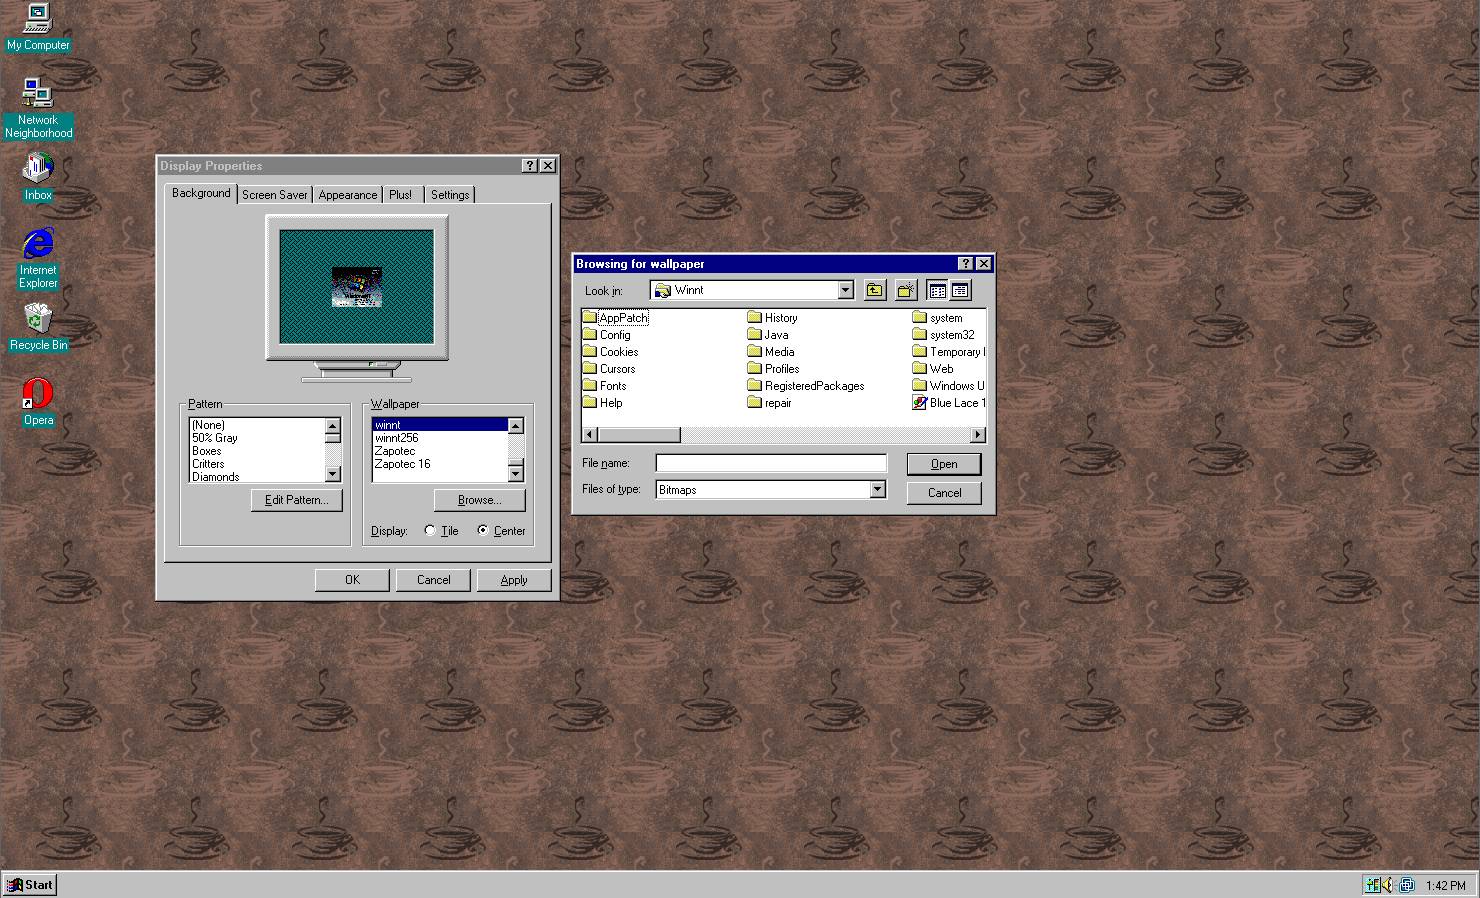 Personalizacja pulpitu (taka sama jak w Windows 95).